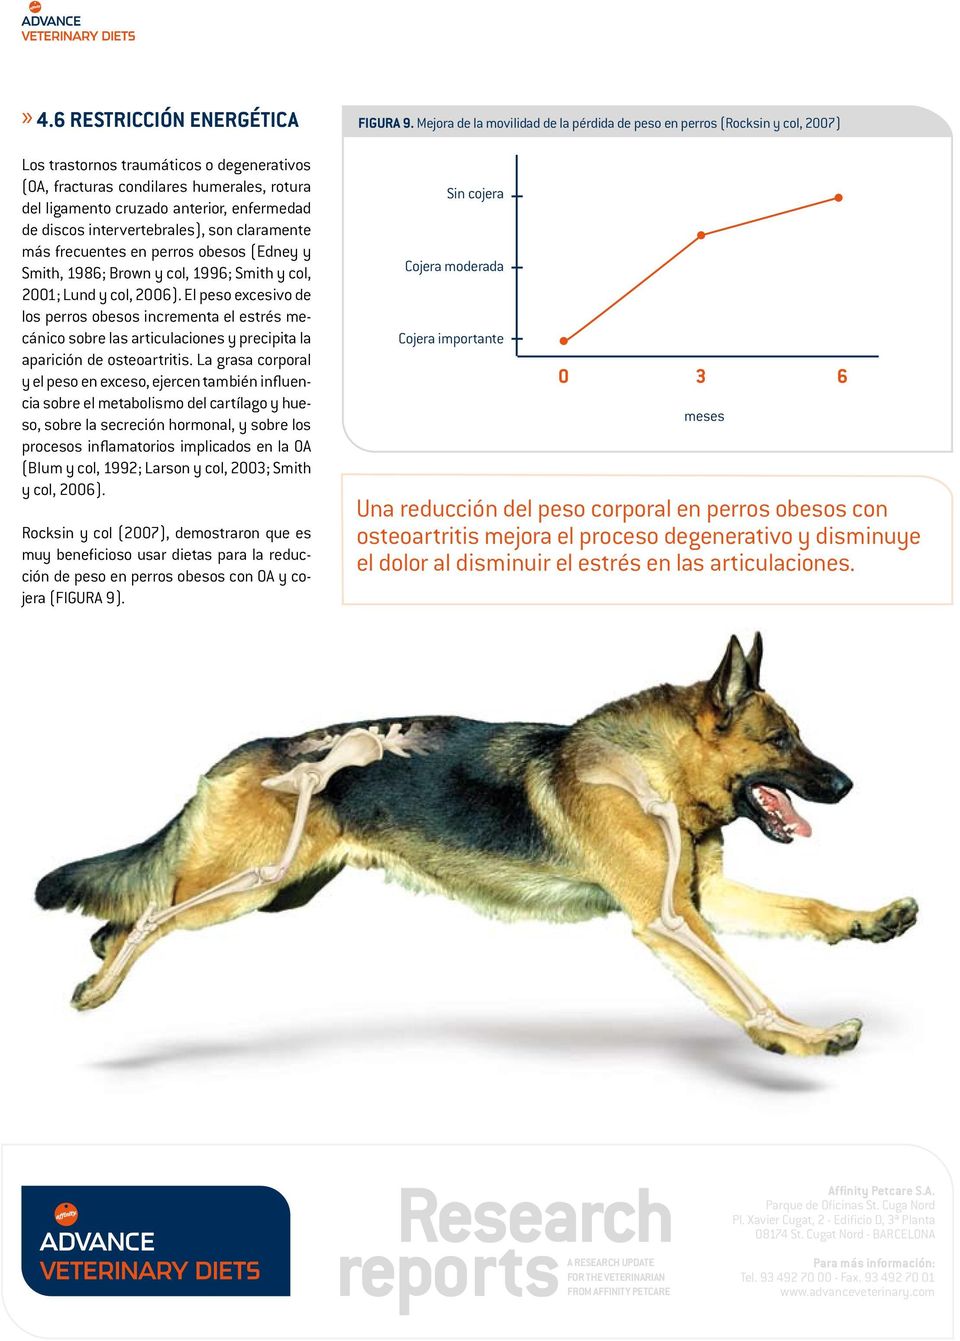 El peso excesivo de los perros obesos incrementa el estrés mecánico sobre las articulaciones y precipita la aparición de osteoartritis.